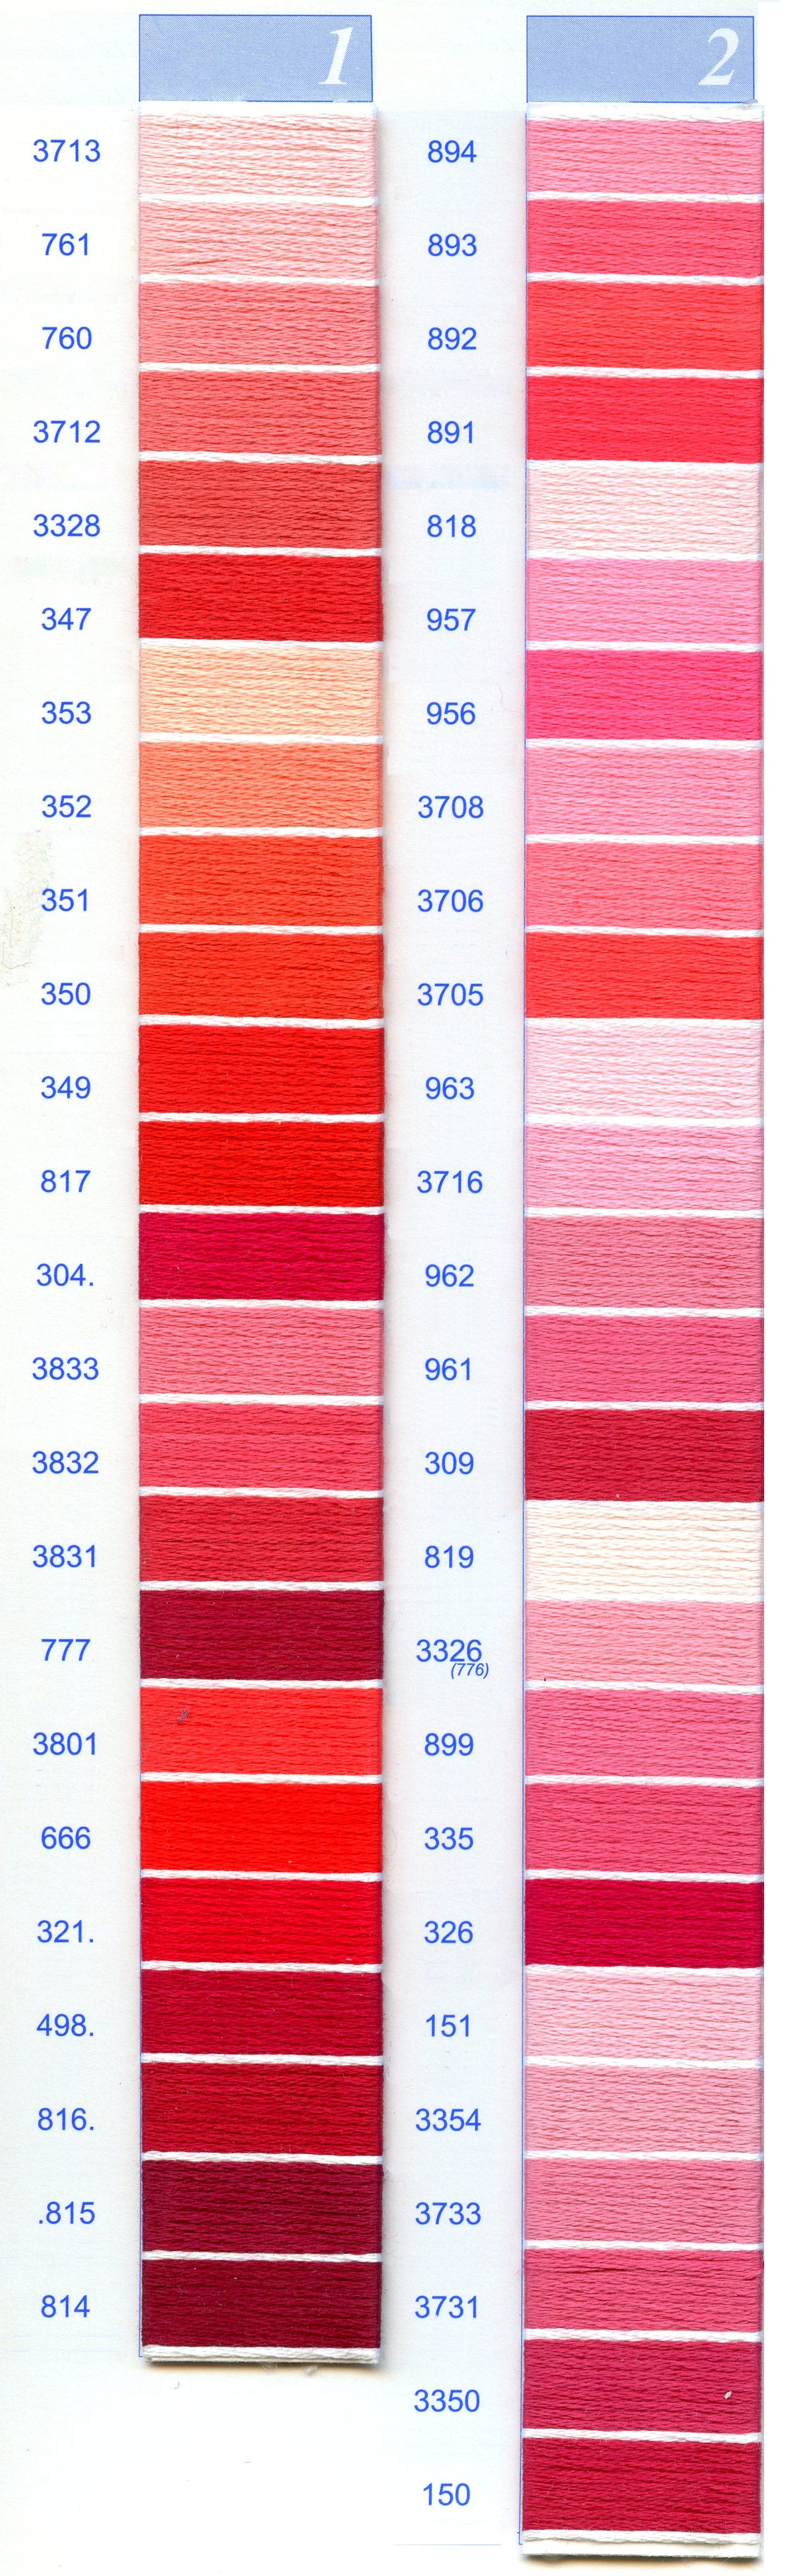 DMC Color Chart